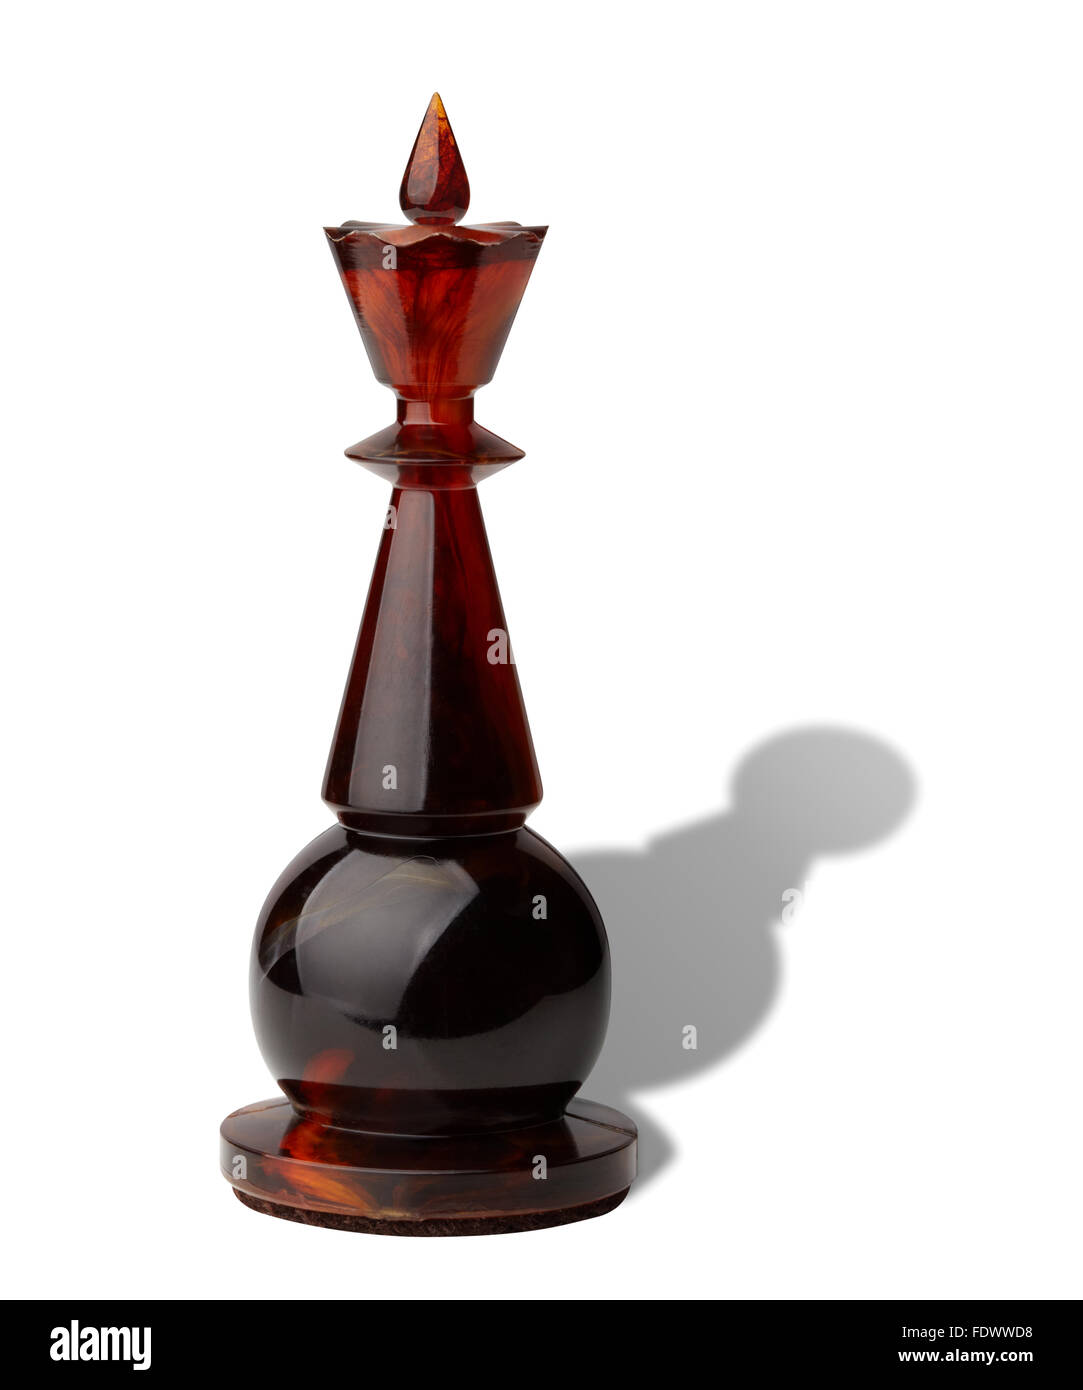 Schachkönig mit Bauern der Schatten isoliert auf weißem Hintergrund, Clipping-Pfad enthalten. Stockfoto